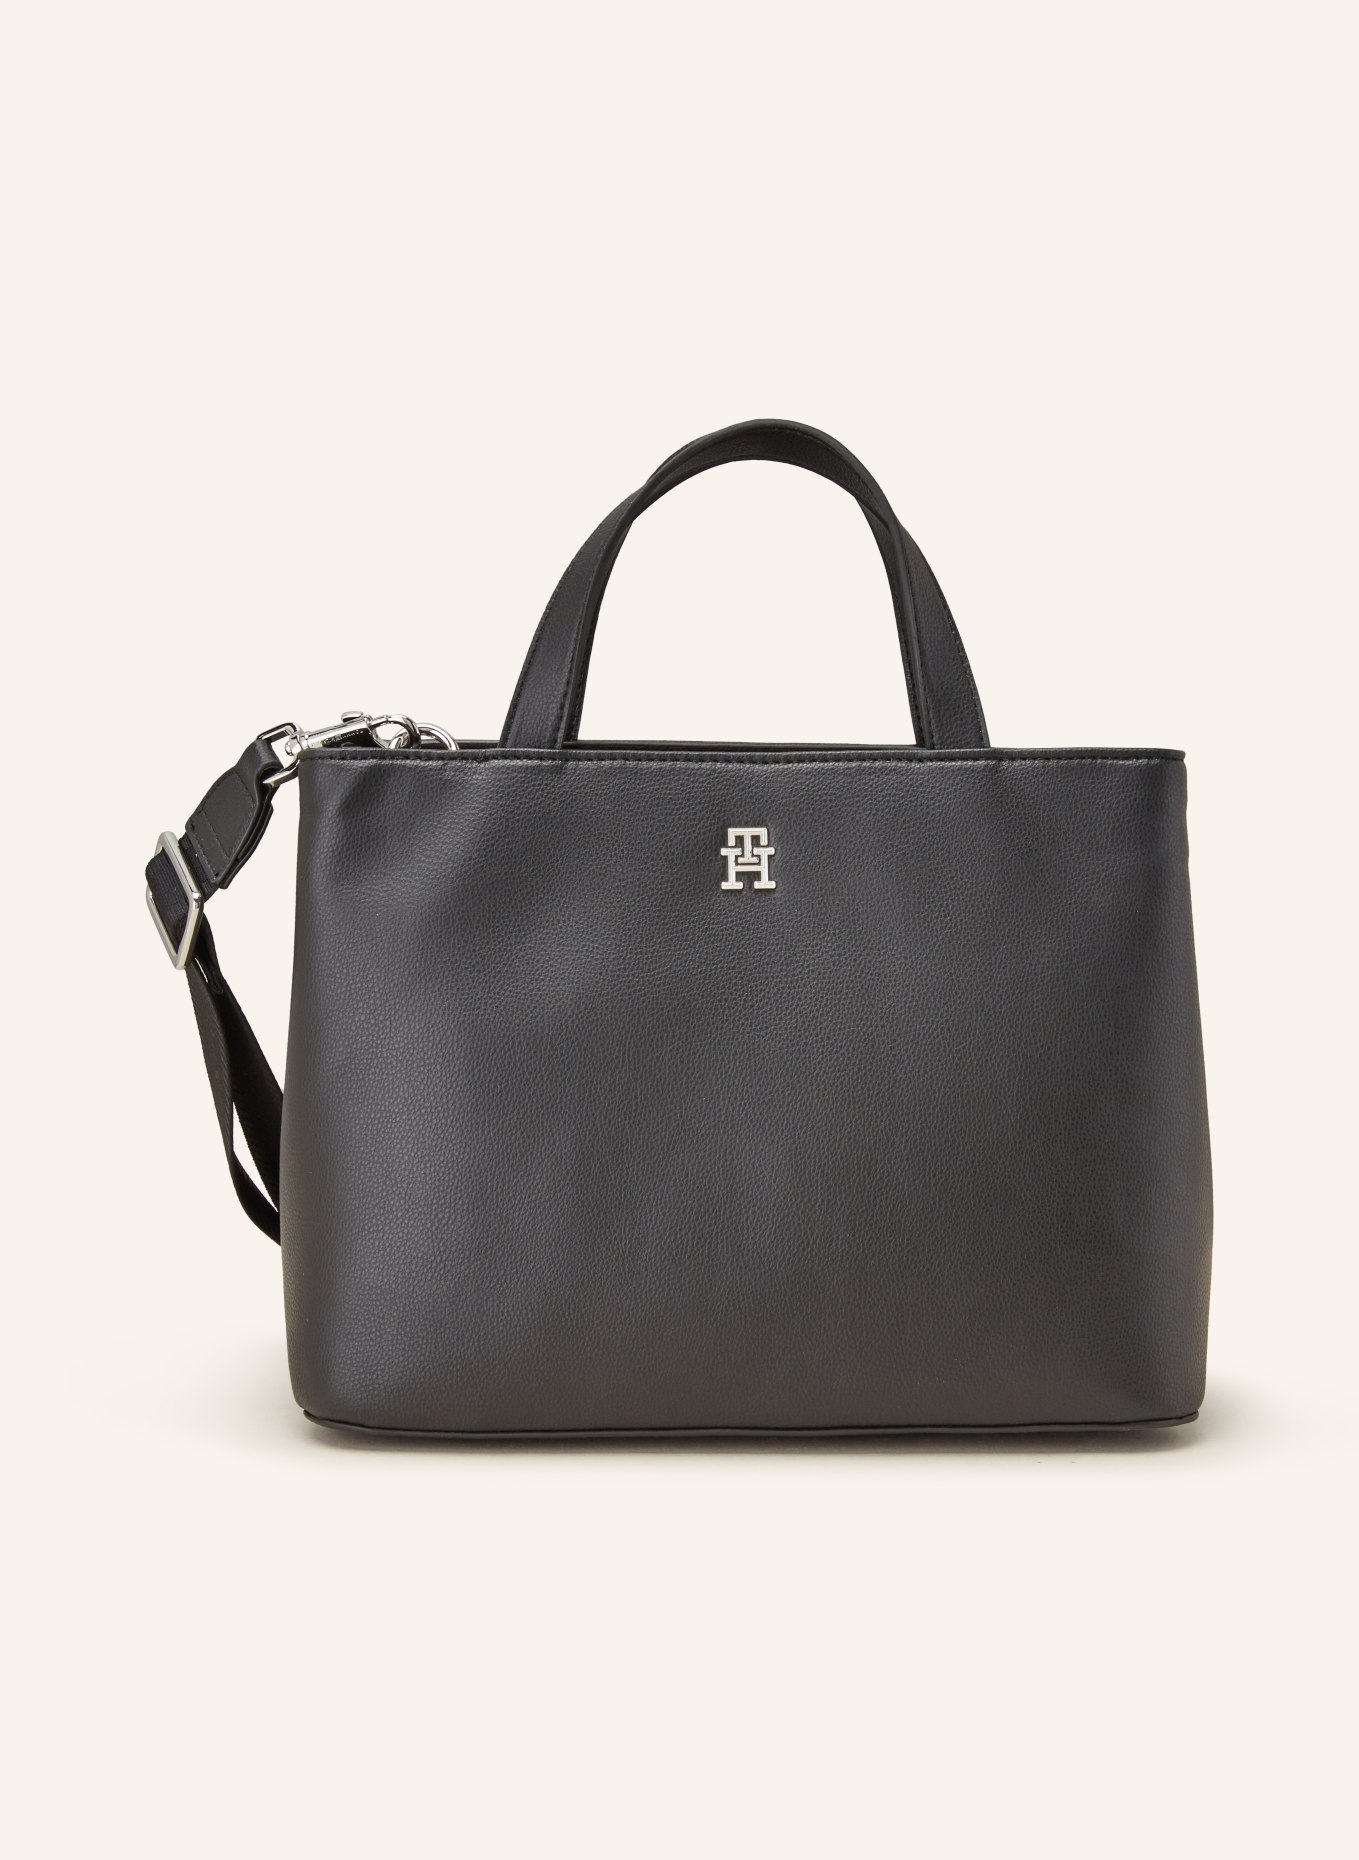 TOMMY HILFIGER Handbag, Color: BLACK (Image 1)